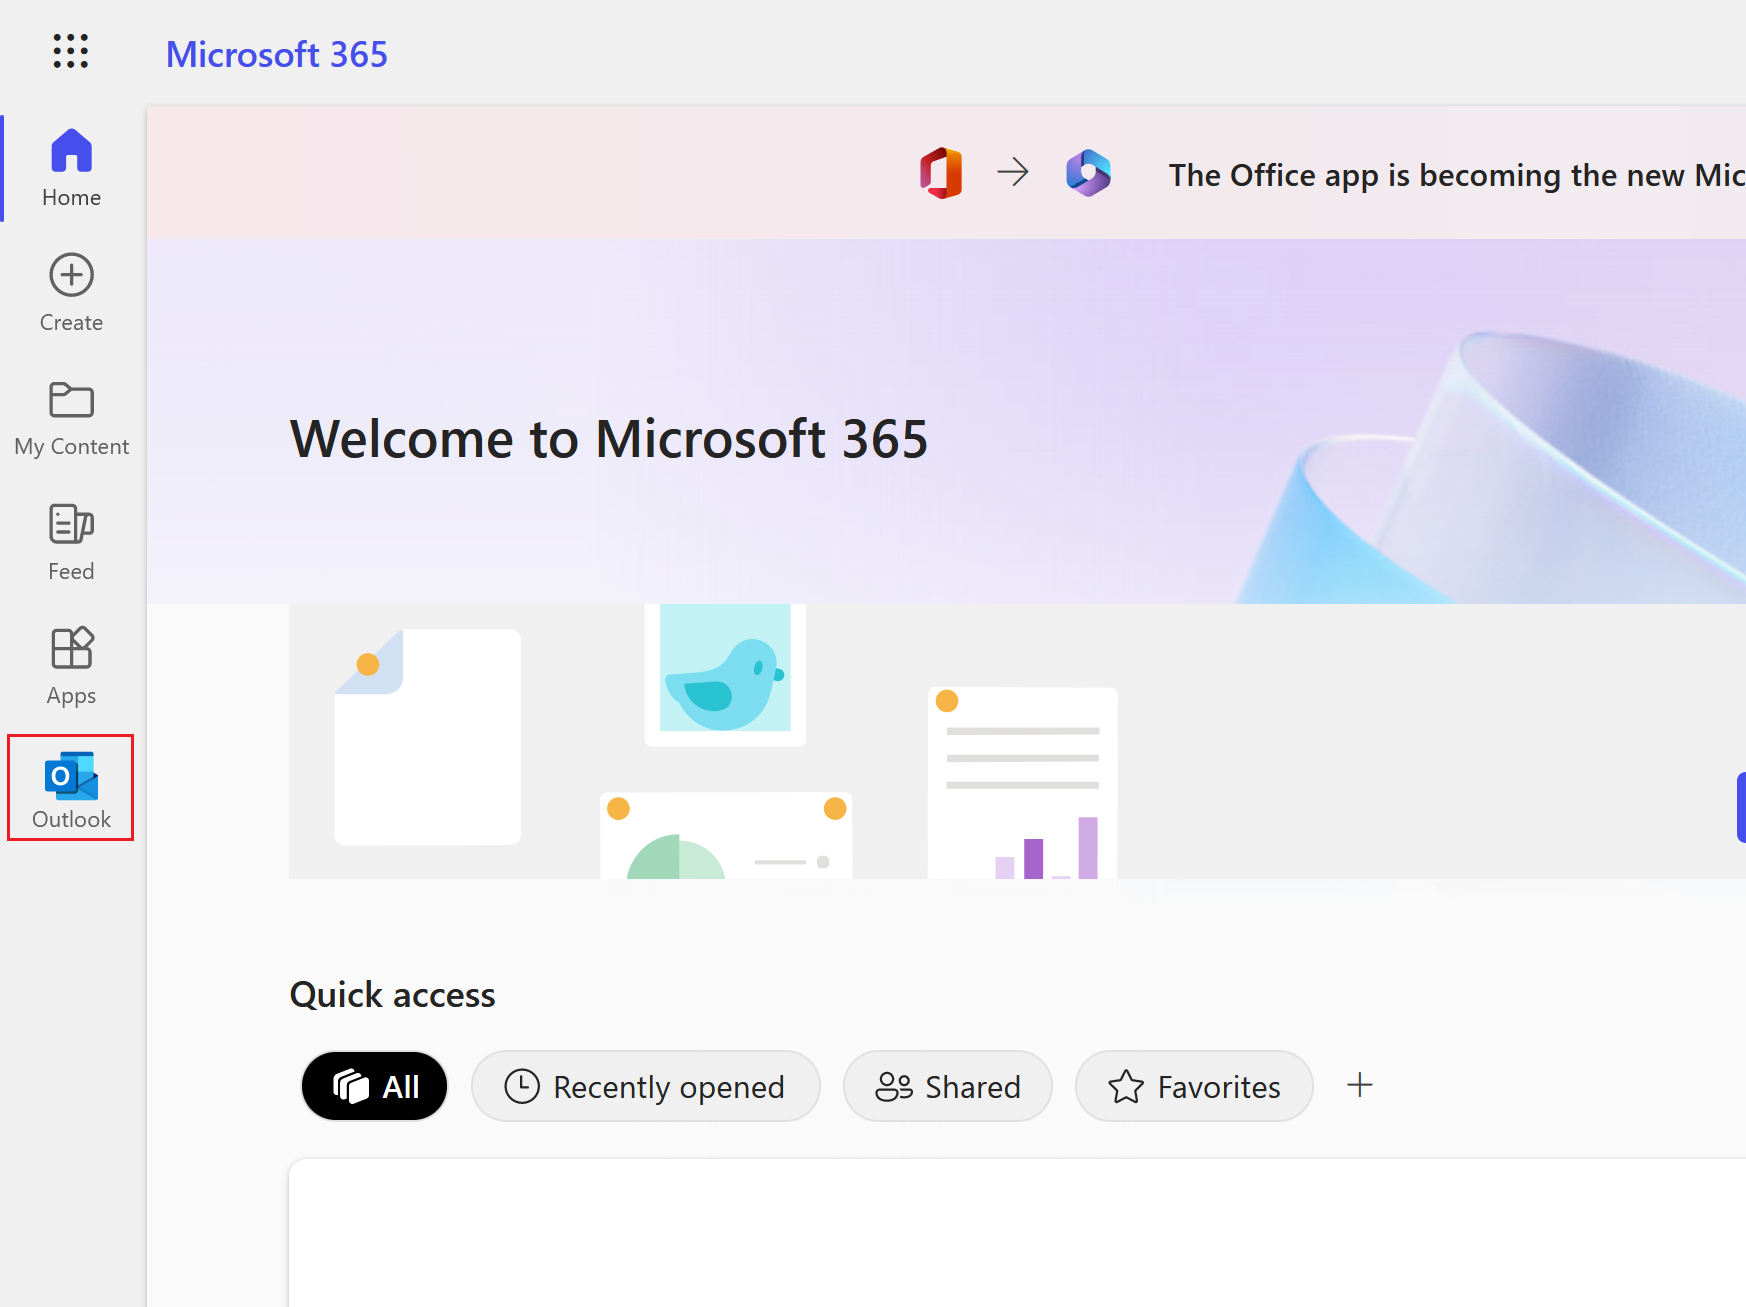 selecione o ícone do Outlook para abrir sua caixa de entrada